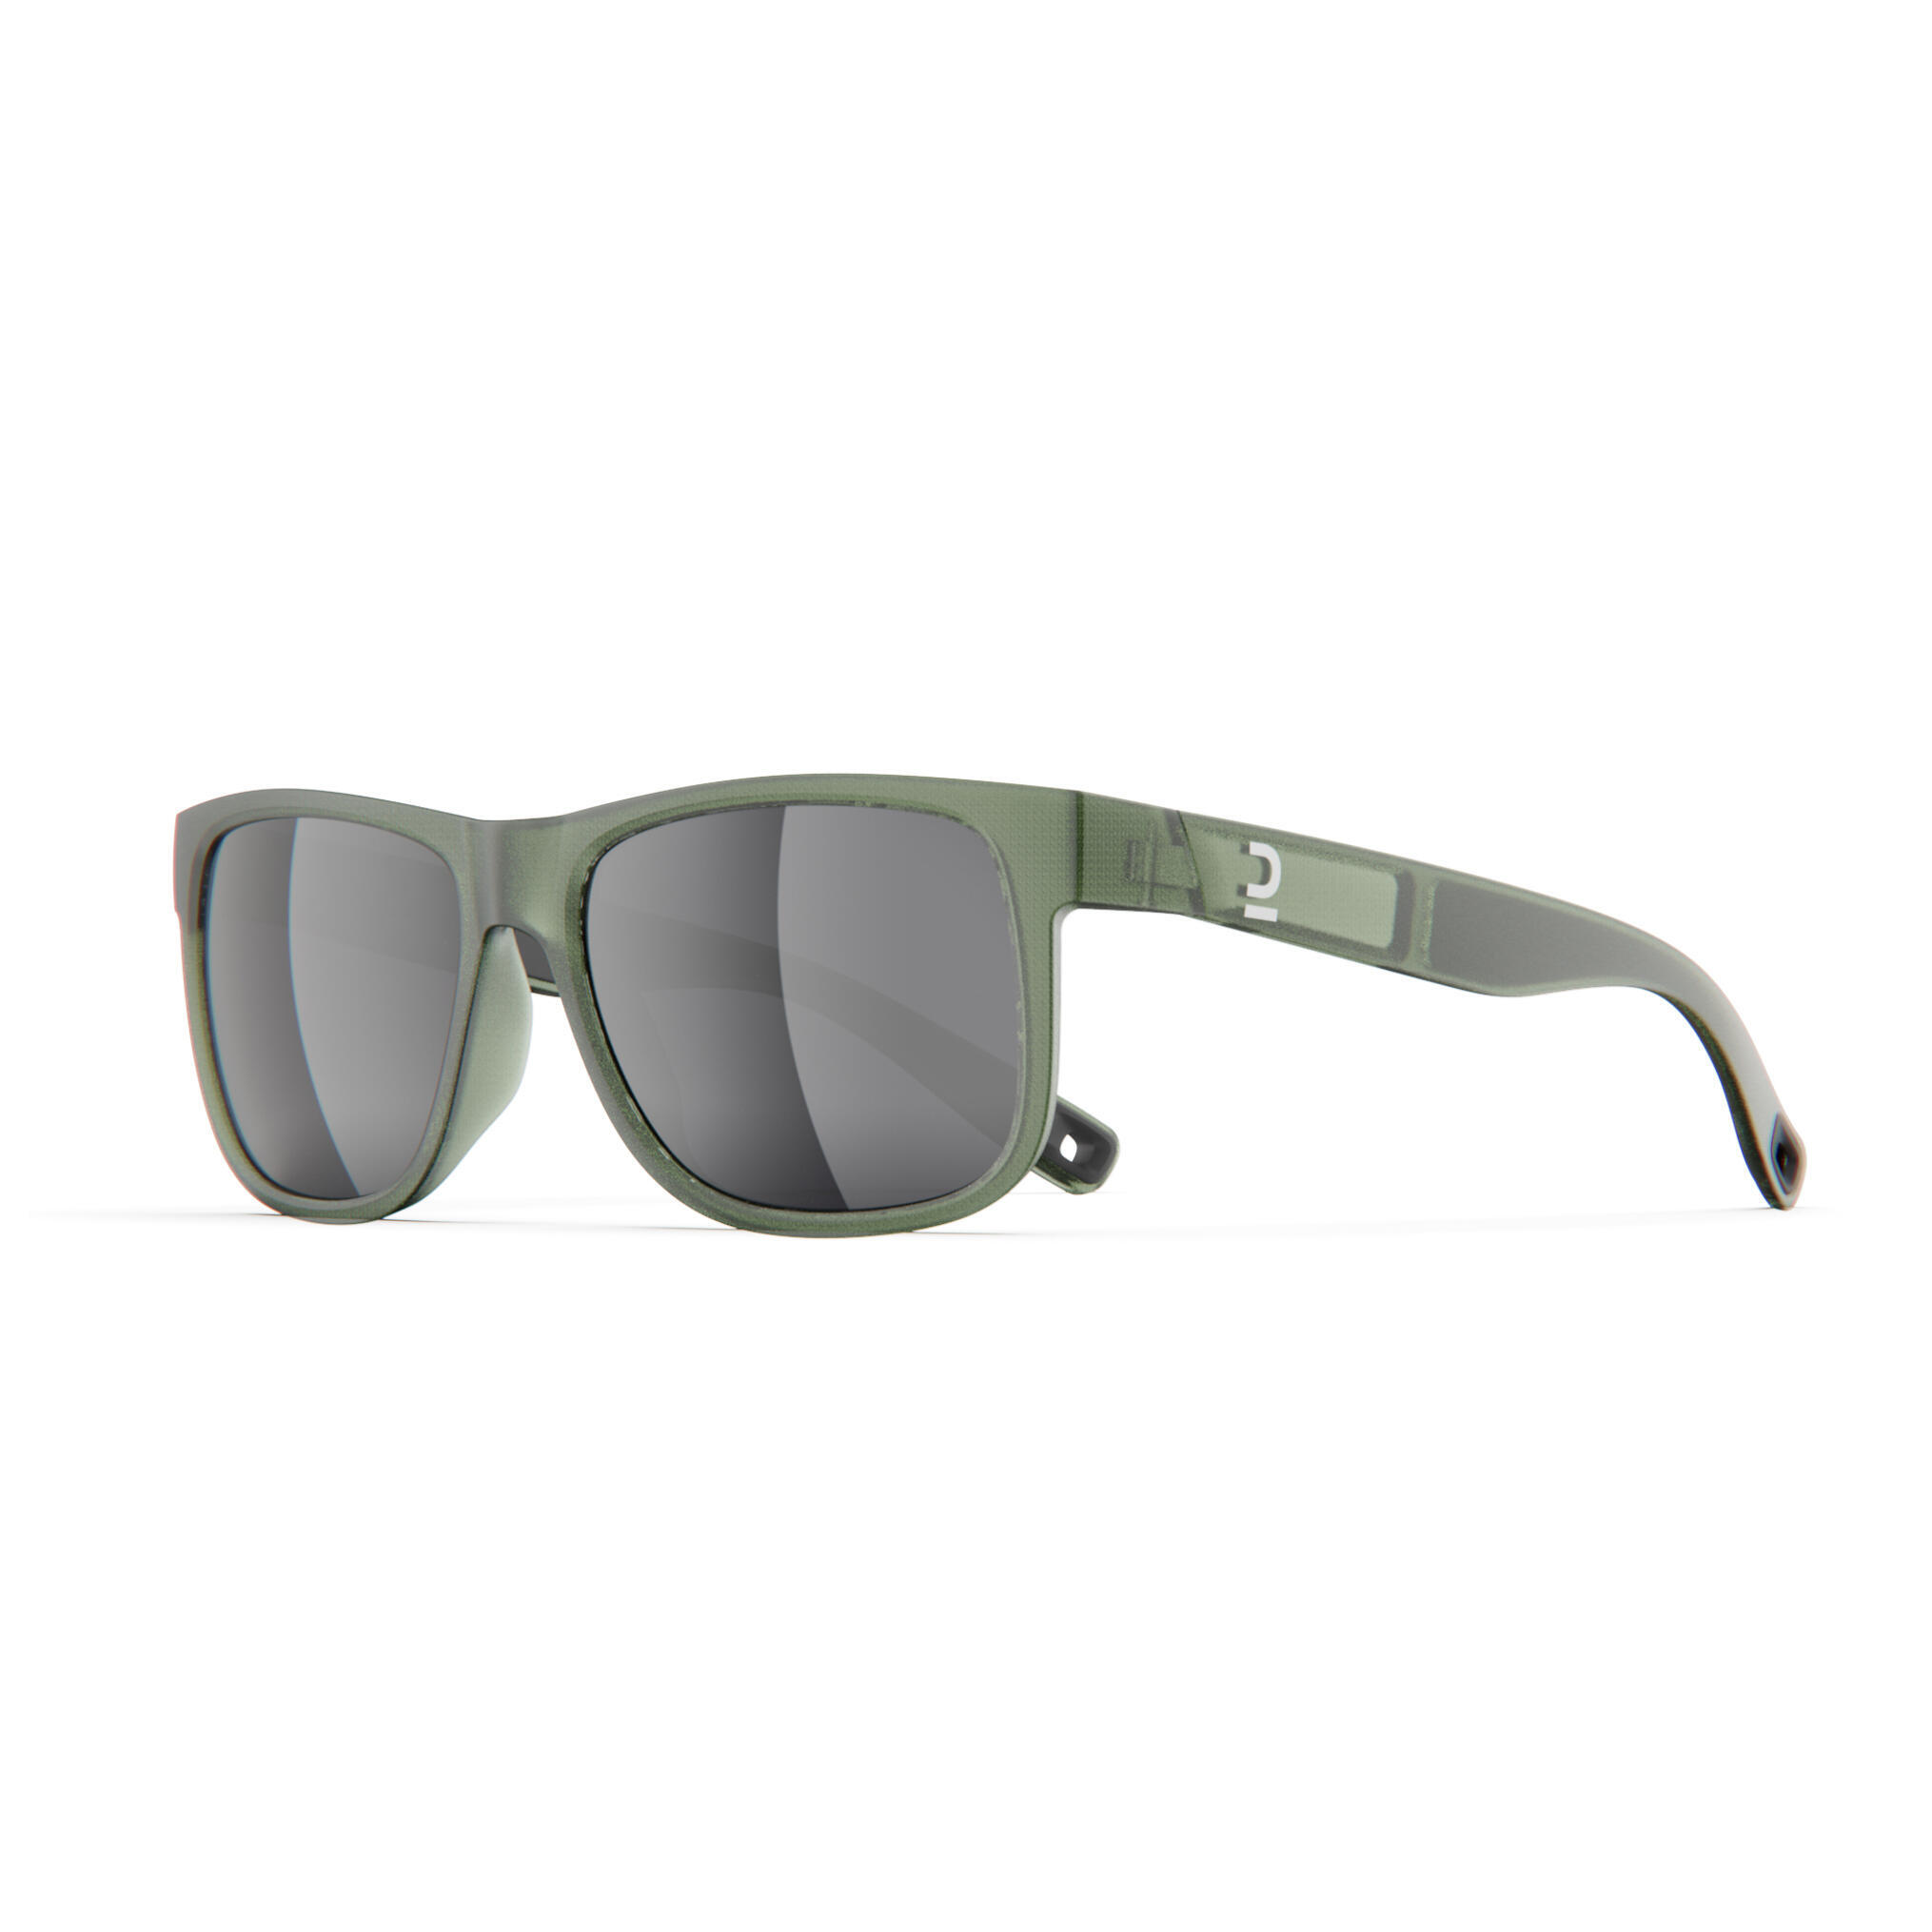 Очки солнцезащитные Quechua MH530 для походов, категории 3, хаки / серебристый / лаврово-зеленый солнцезащитные очки зеленый белый